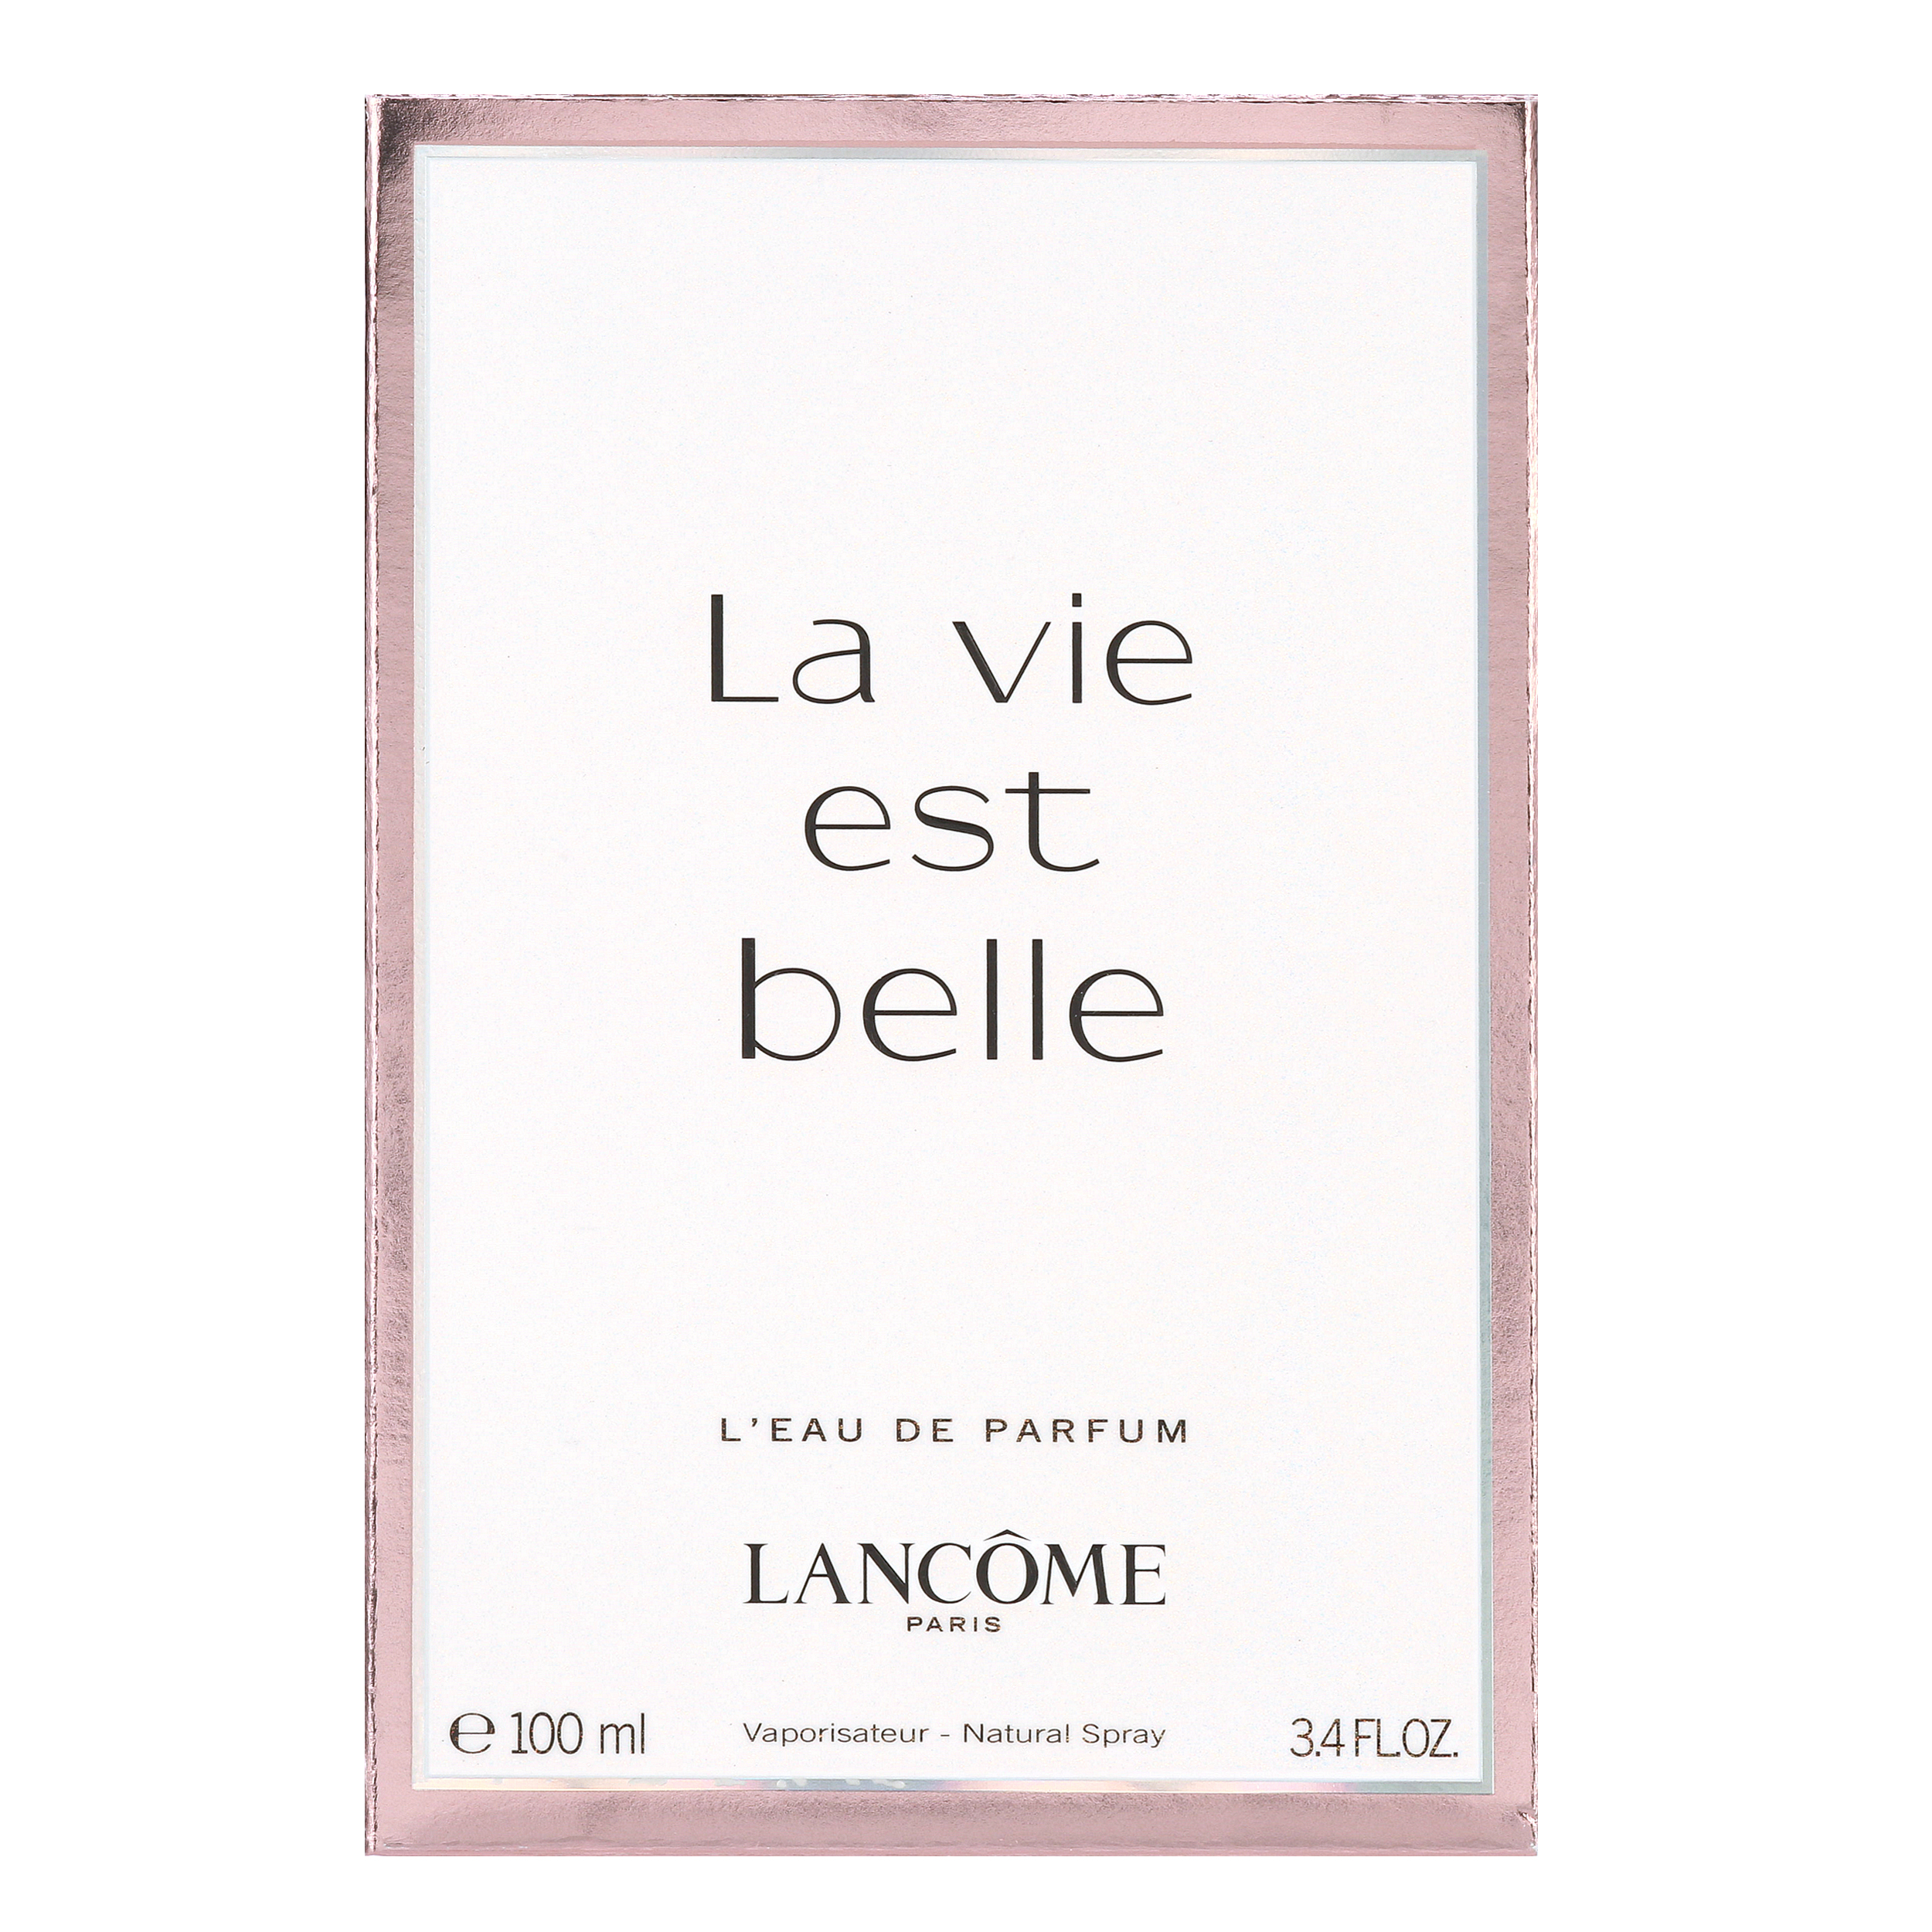 Lancome La Vie Est Belle Eau de Parfum, Perfume for Women, 3.4 oz - image 4 of 5